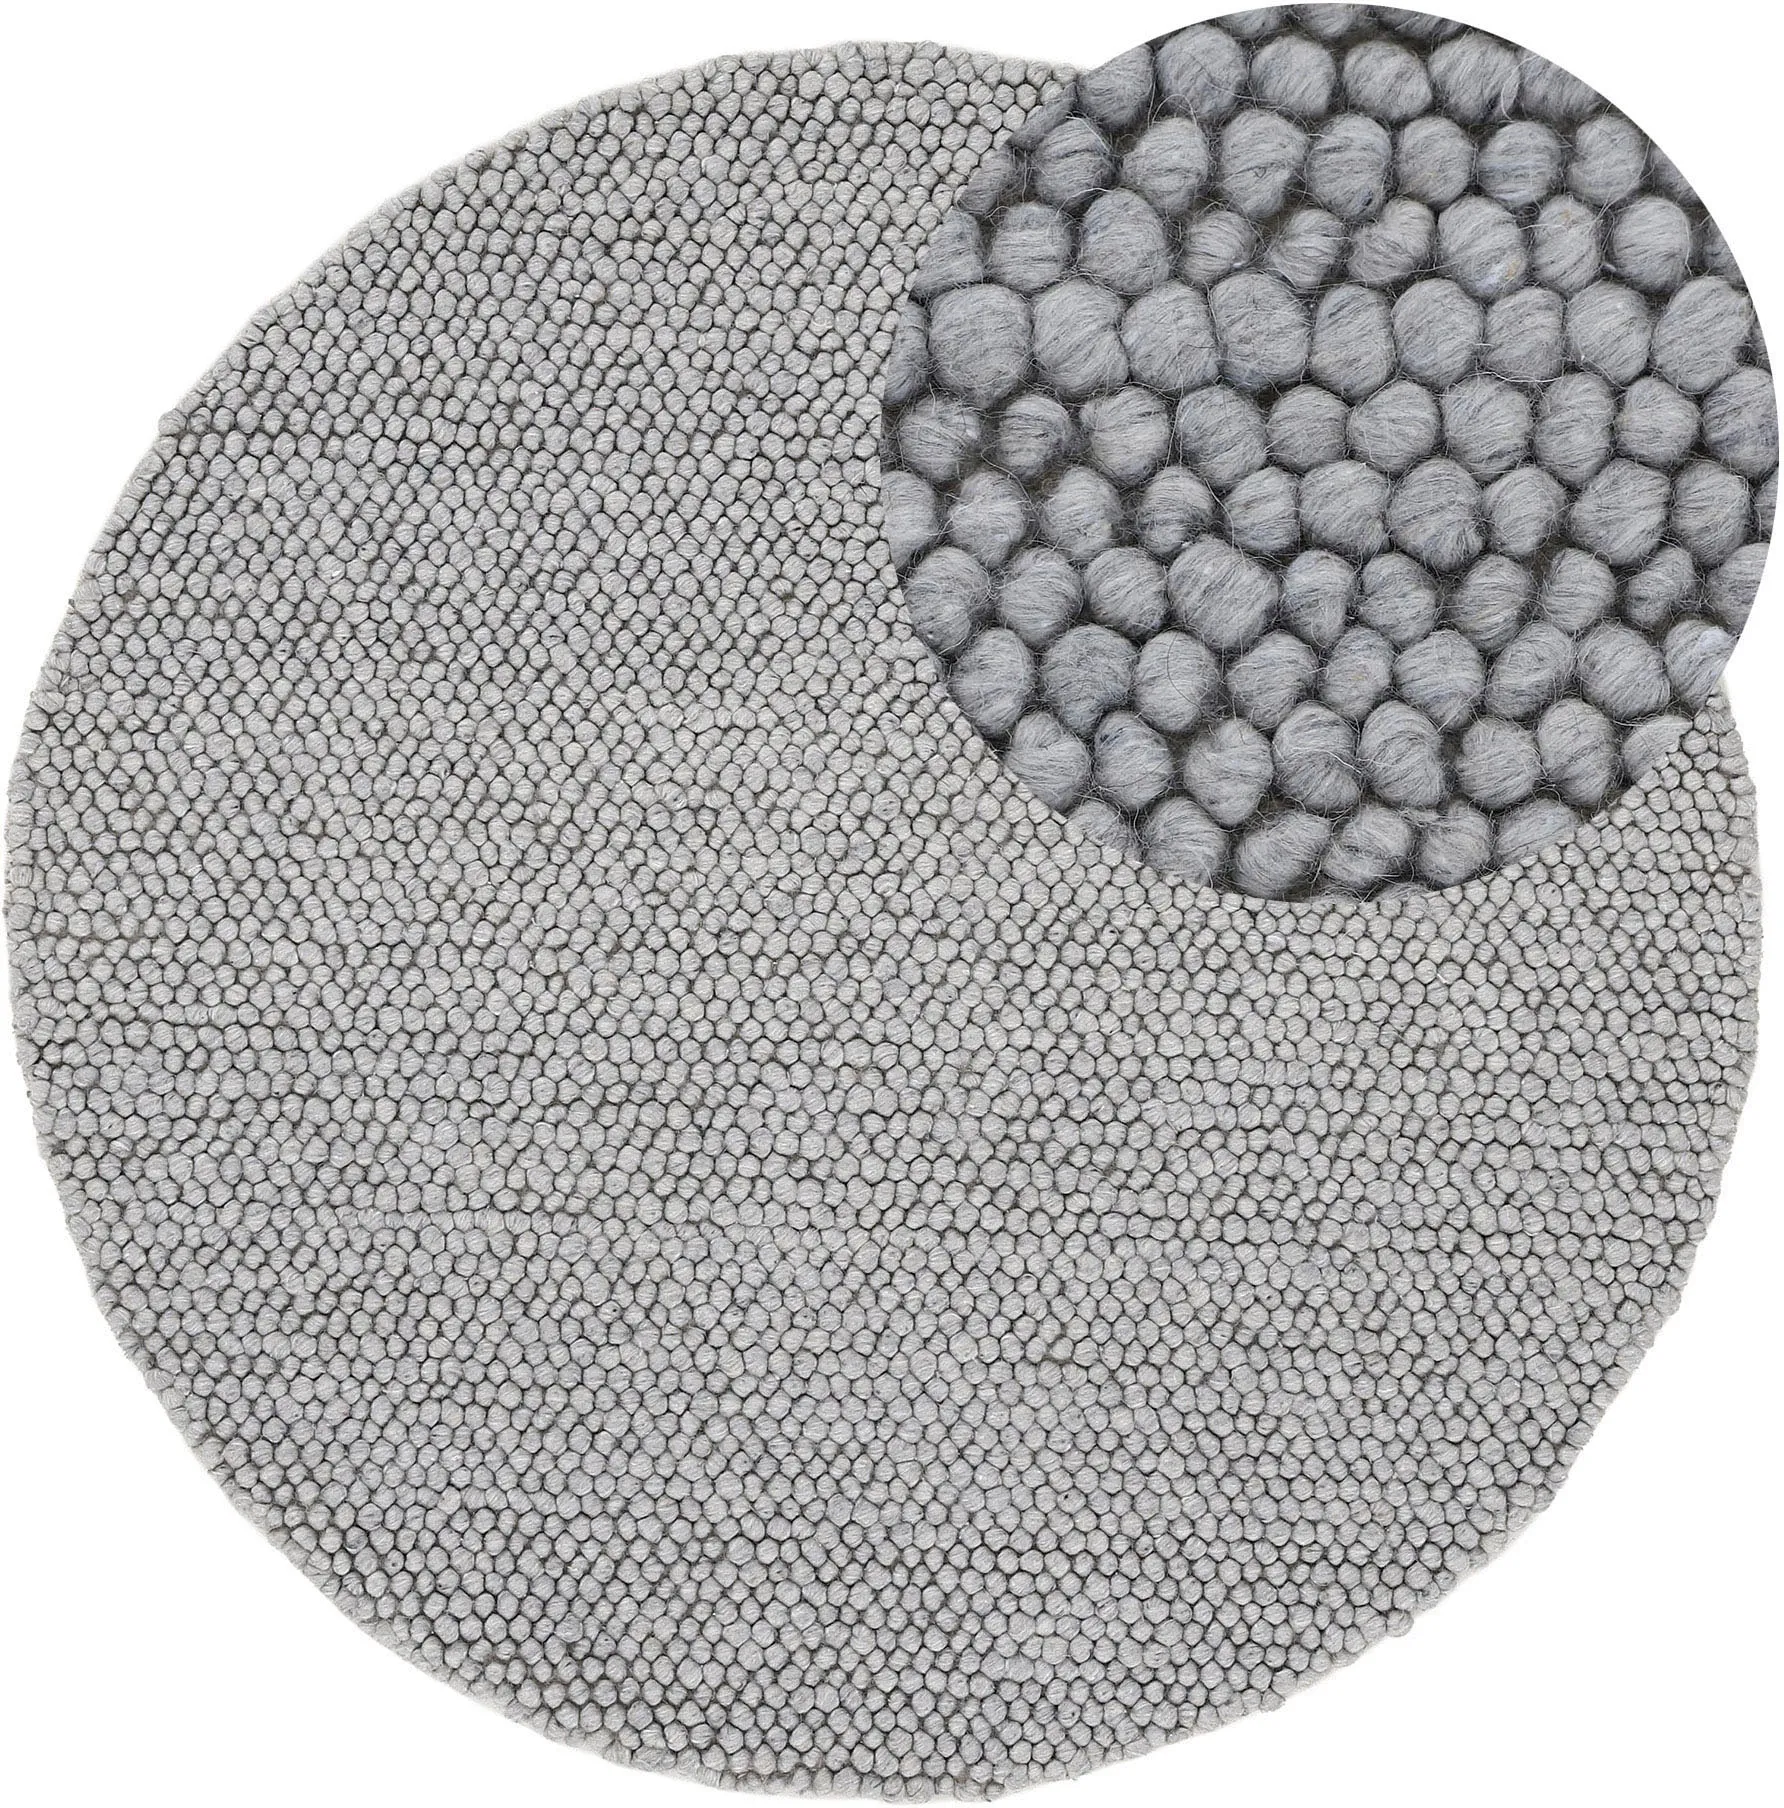 carpetfine Teppich »Calo«, rund, Handweb Teppich, Uni-Farben, meliert, handgewebt, 70% Wolle carpetfine grau Ø 120 cm